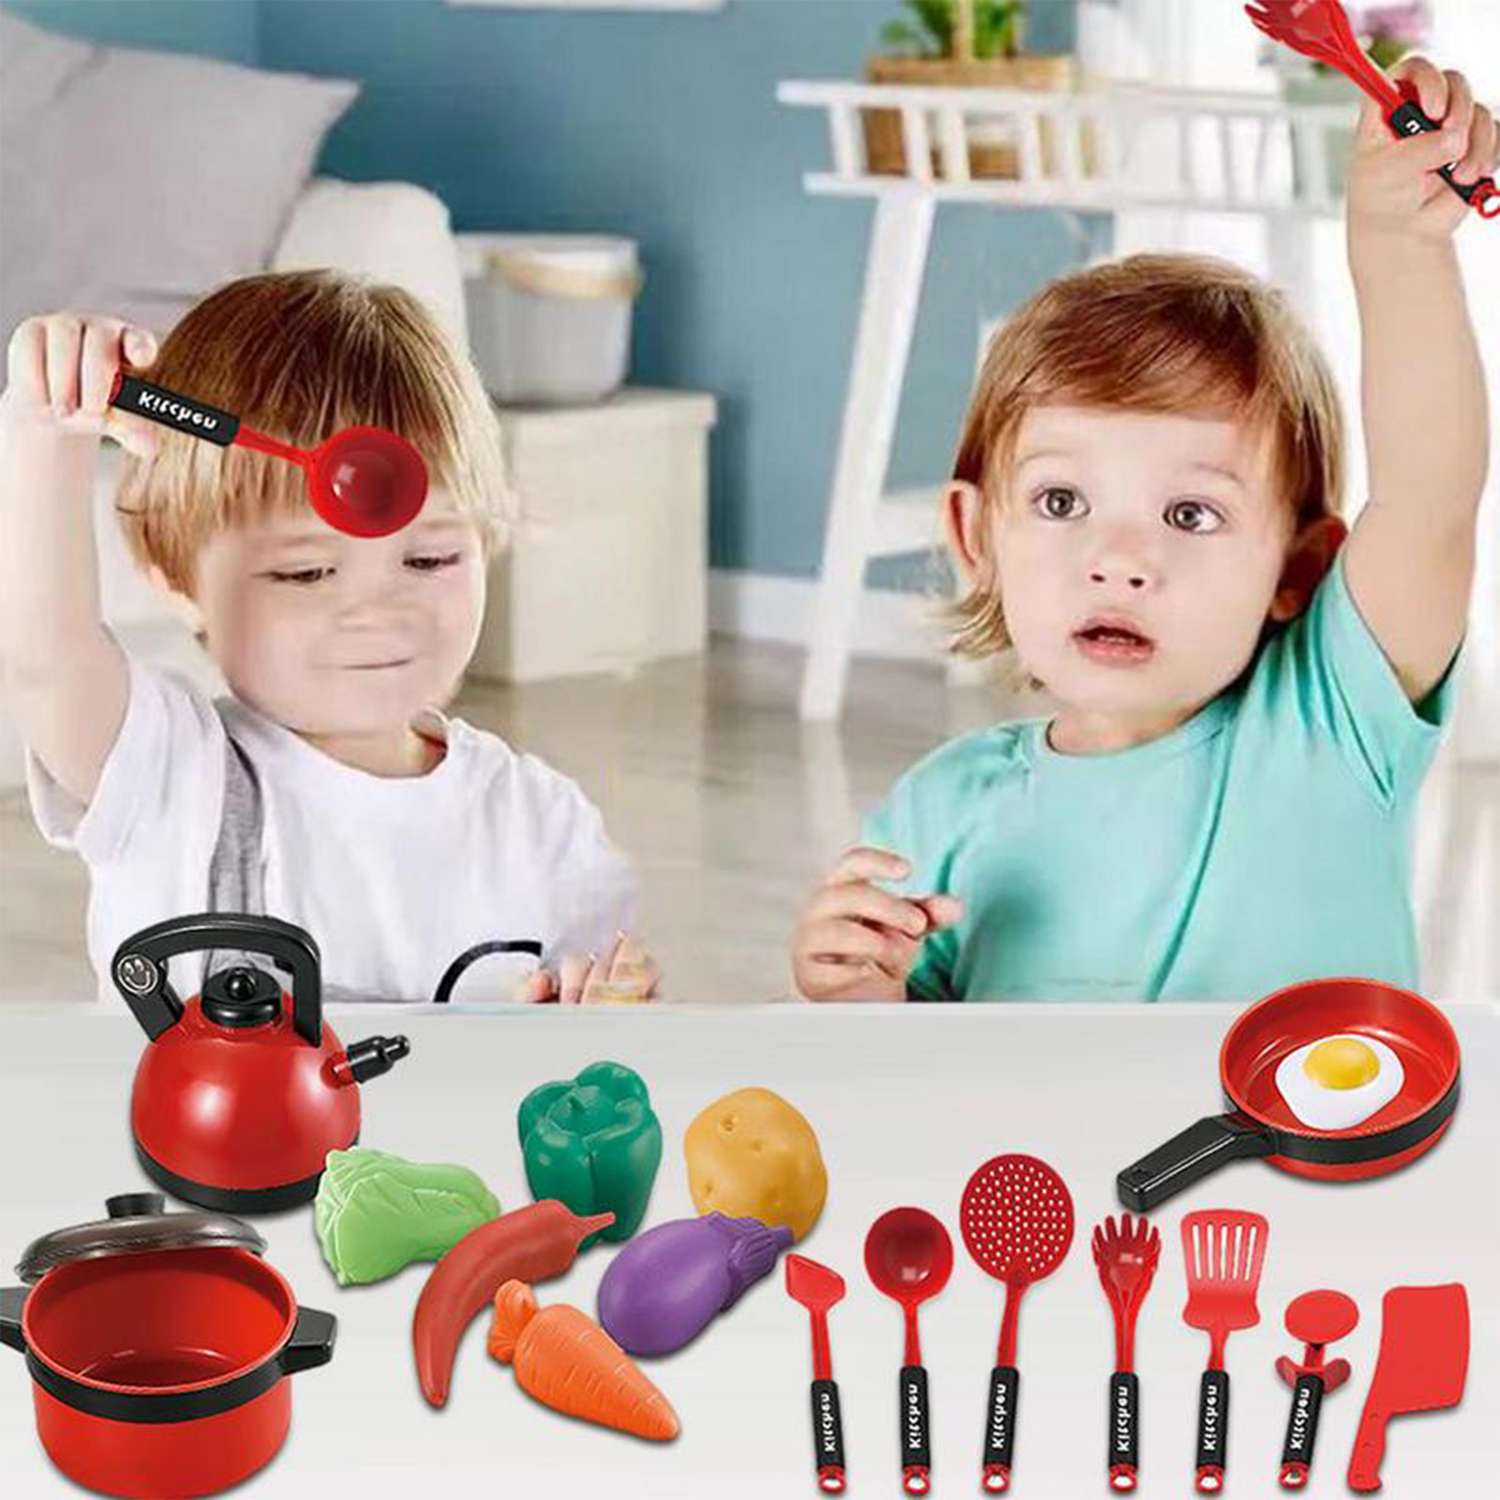 Детский игровой набор SHARKTOYS игрушечной посуды для куклы 18 предметов красный - фото 2